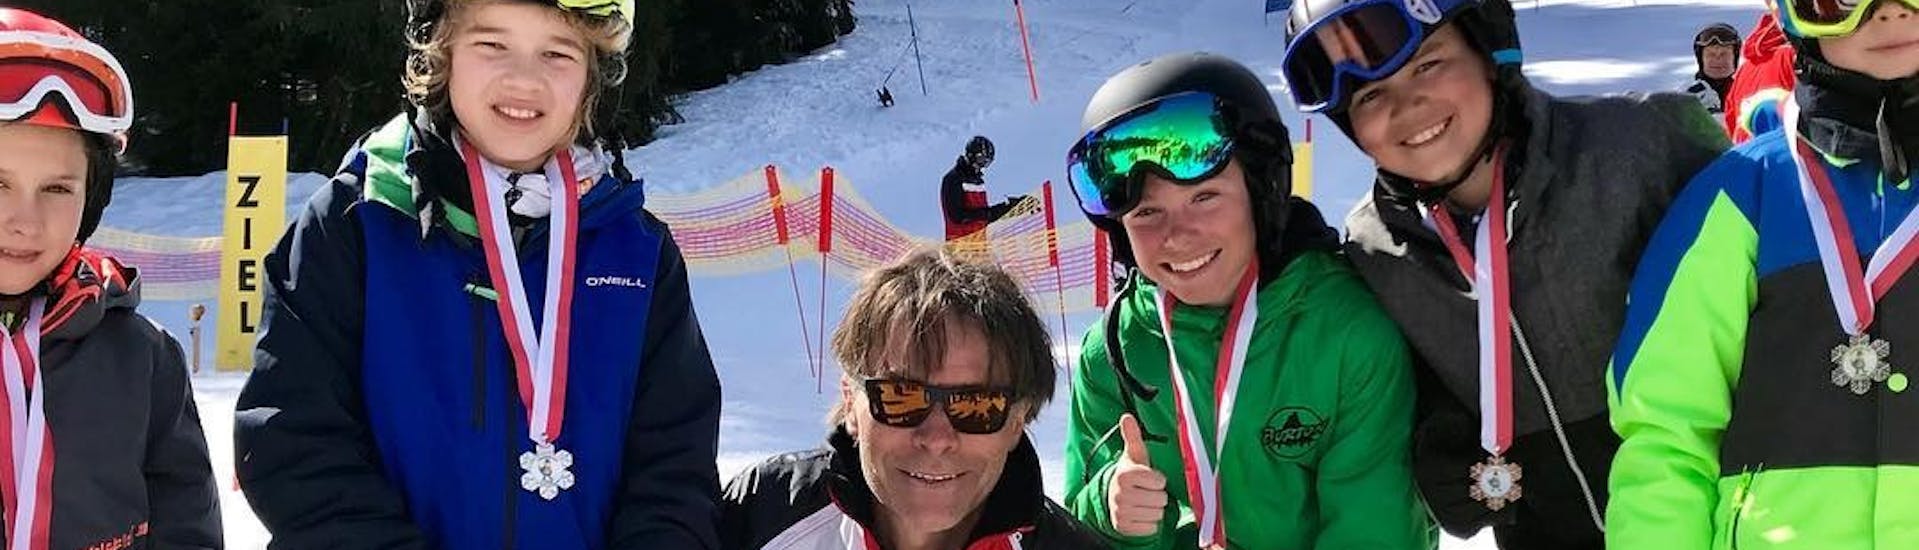 Skilehrer mit Kindern die ihre Medaillen in die Höhe halten während dem Kinder-Skikurs mit Erfahrung mit Skischule Nova.